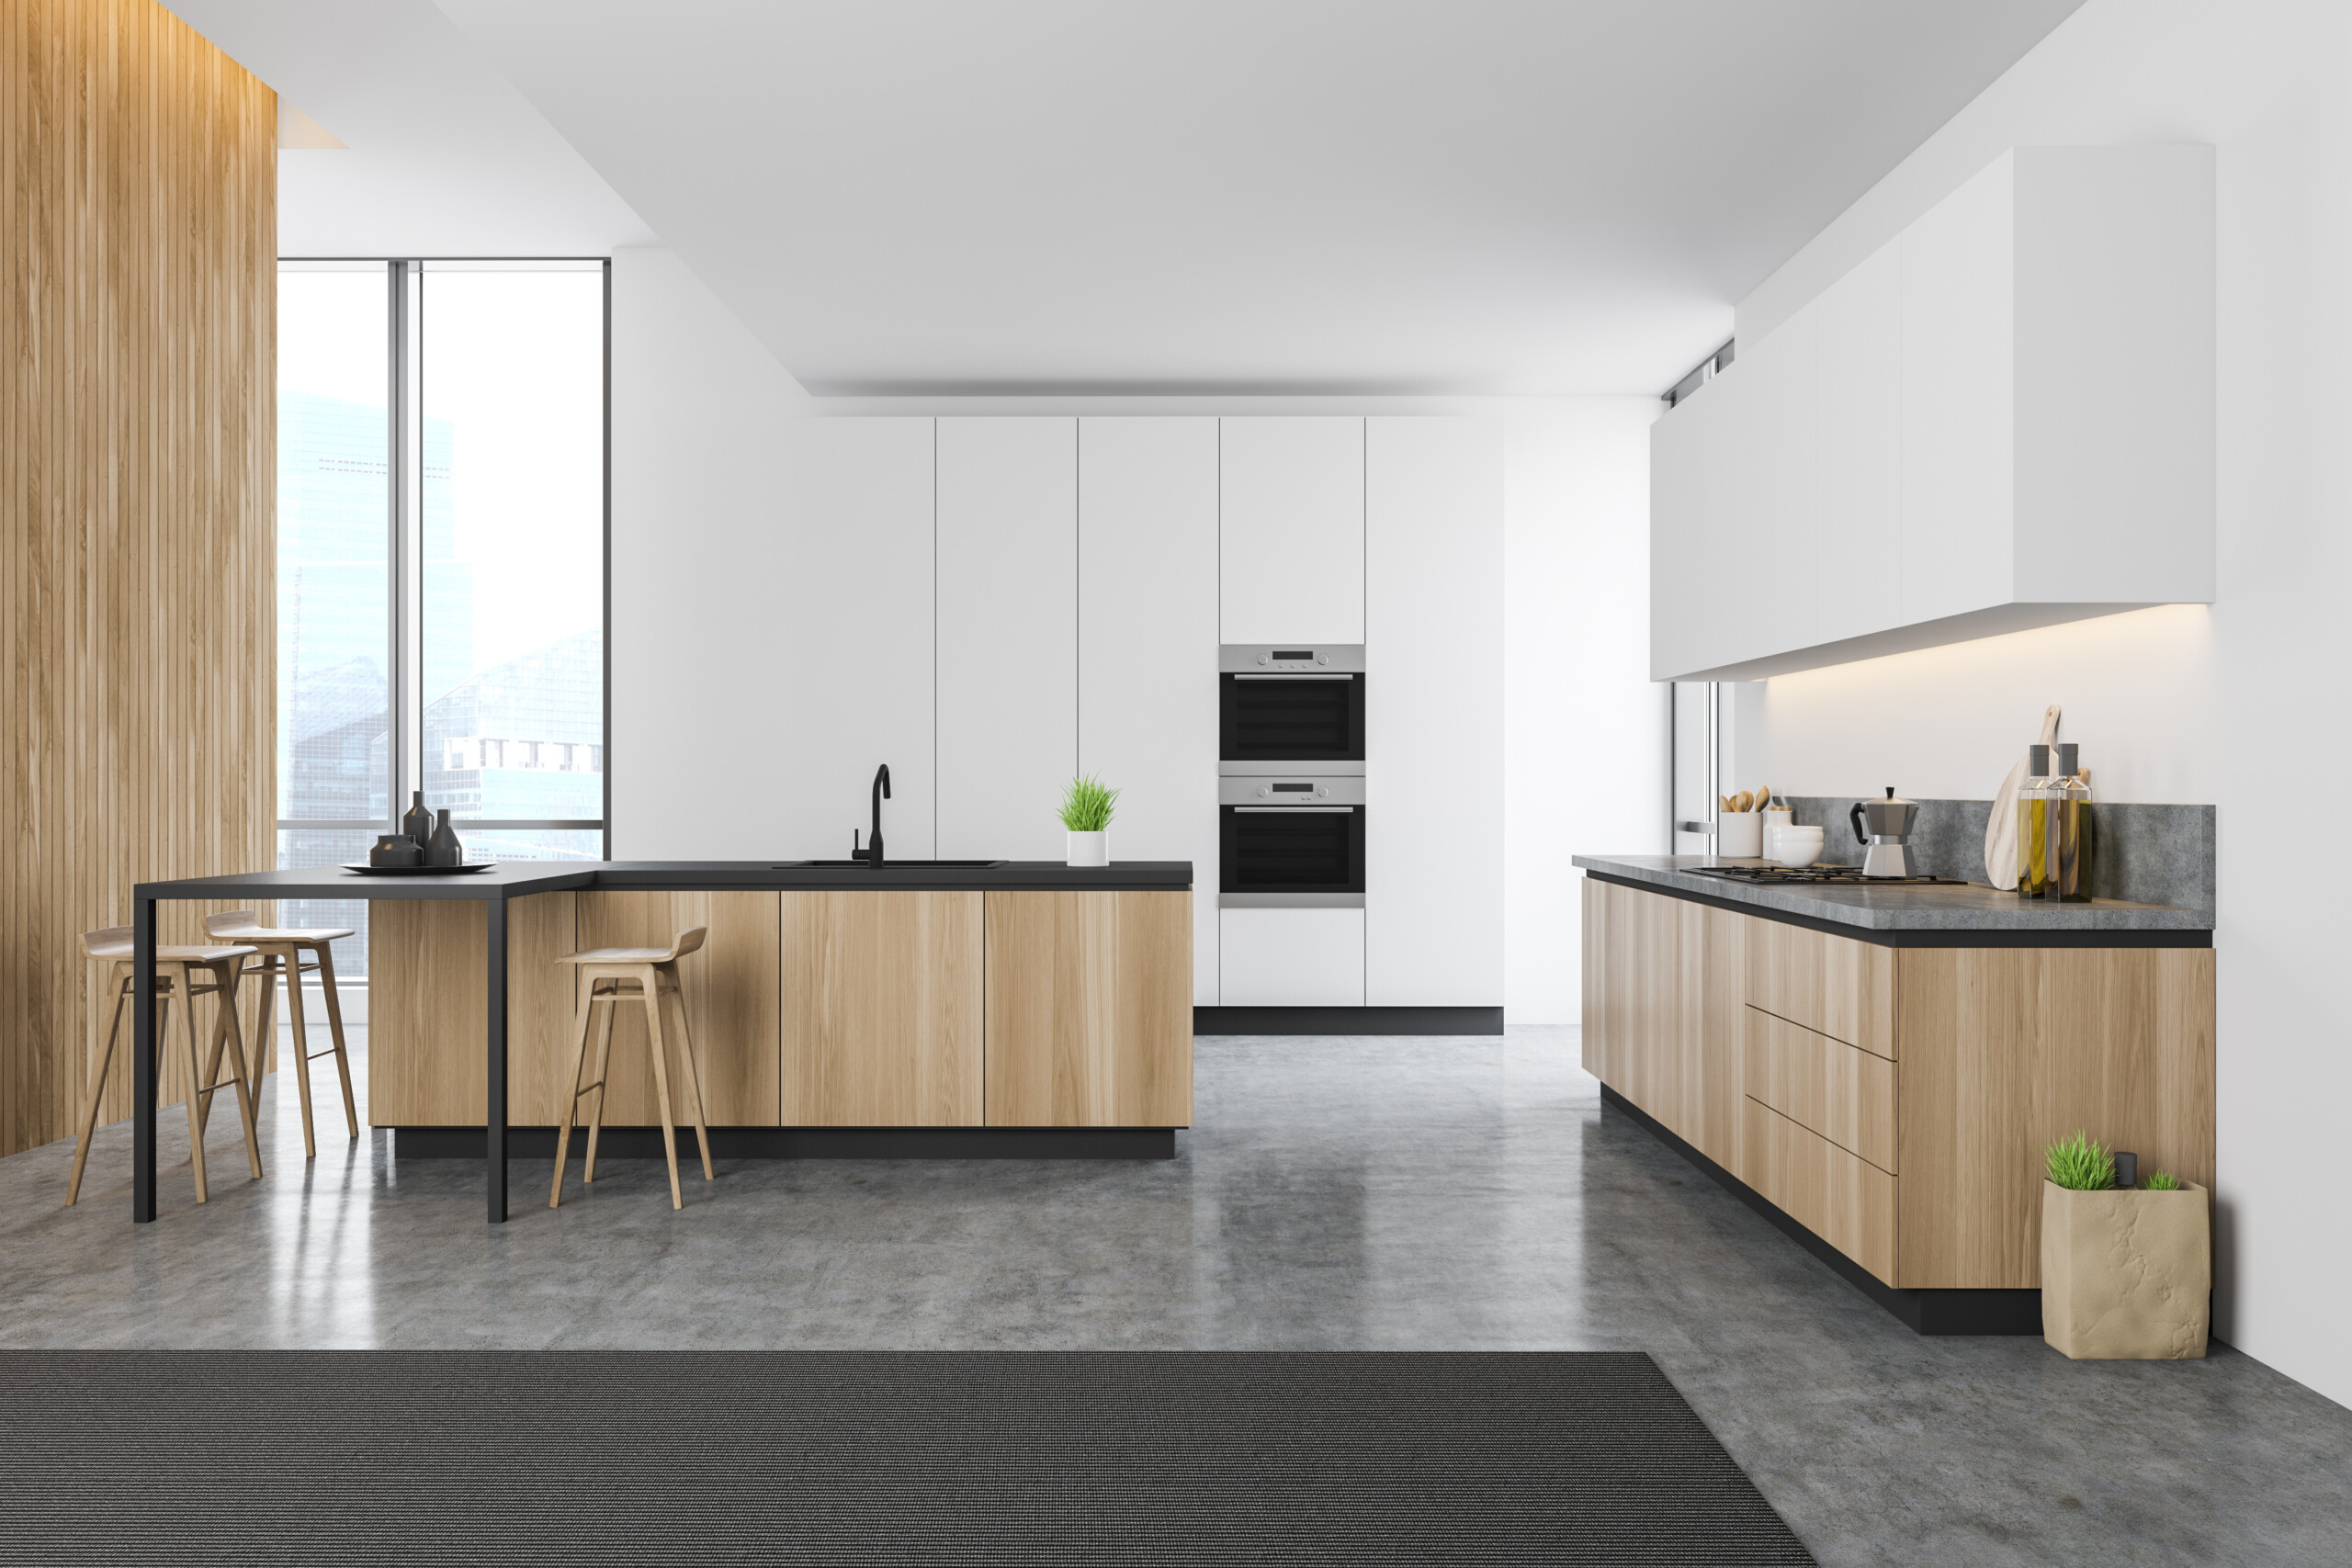 kitchen floor design idea uk